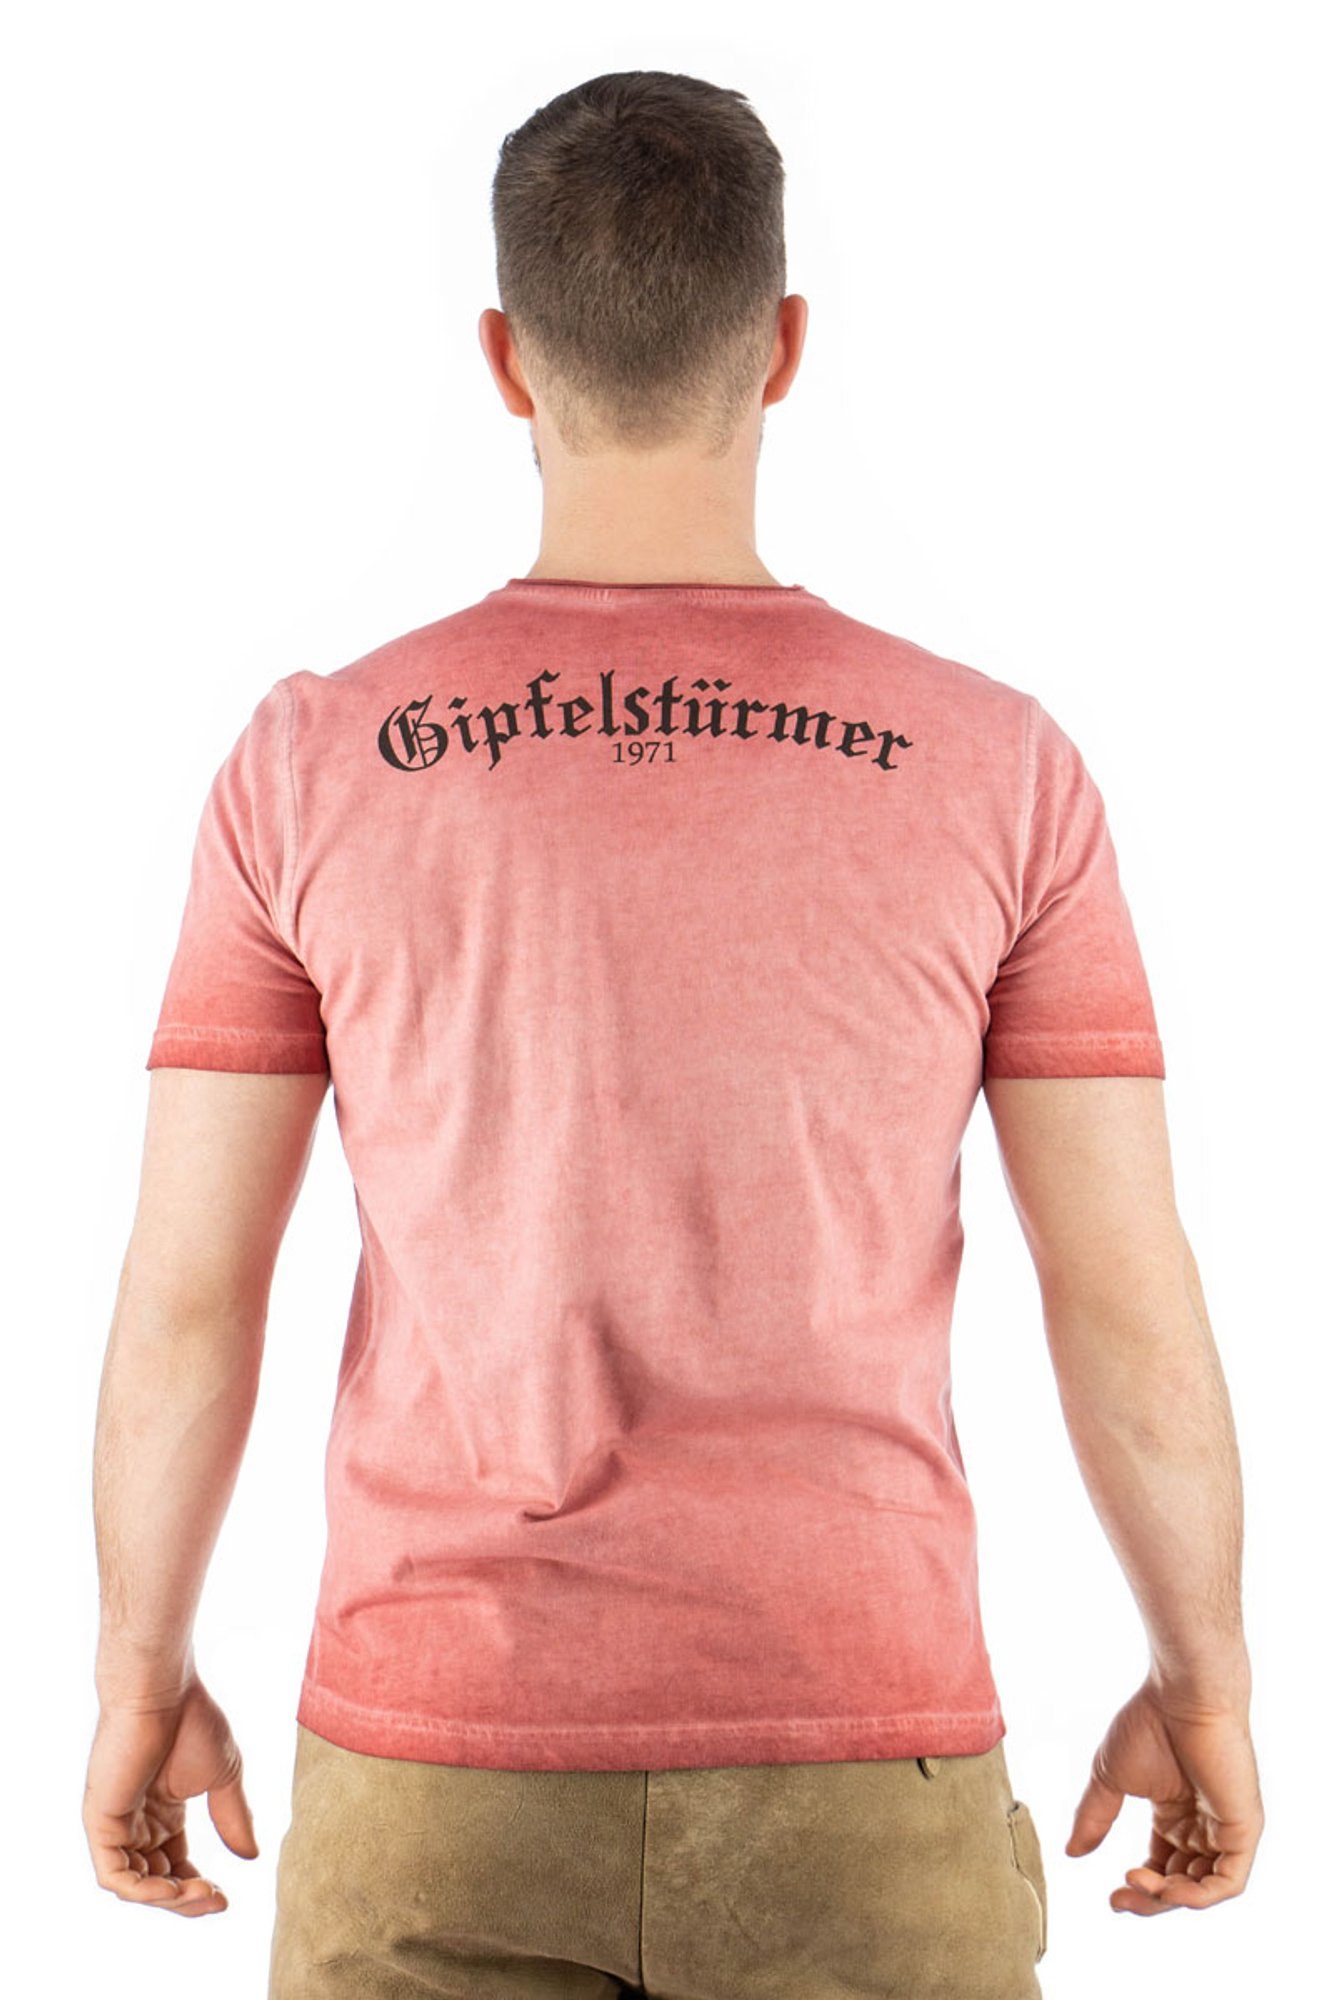 T-Shirt Kurzarm mit Ofapuo weinrot OS-Trachten Motivdruck Trachtenshirt